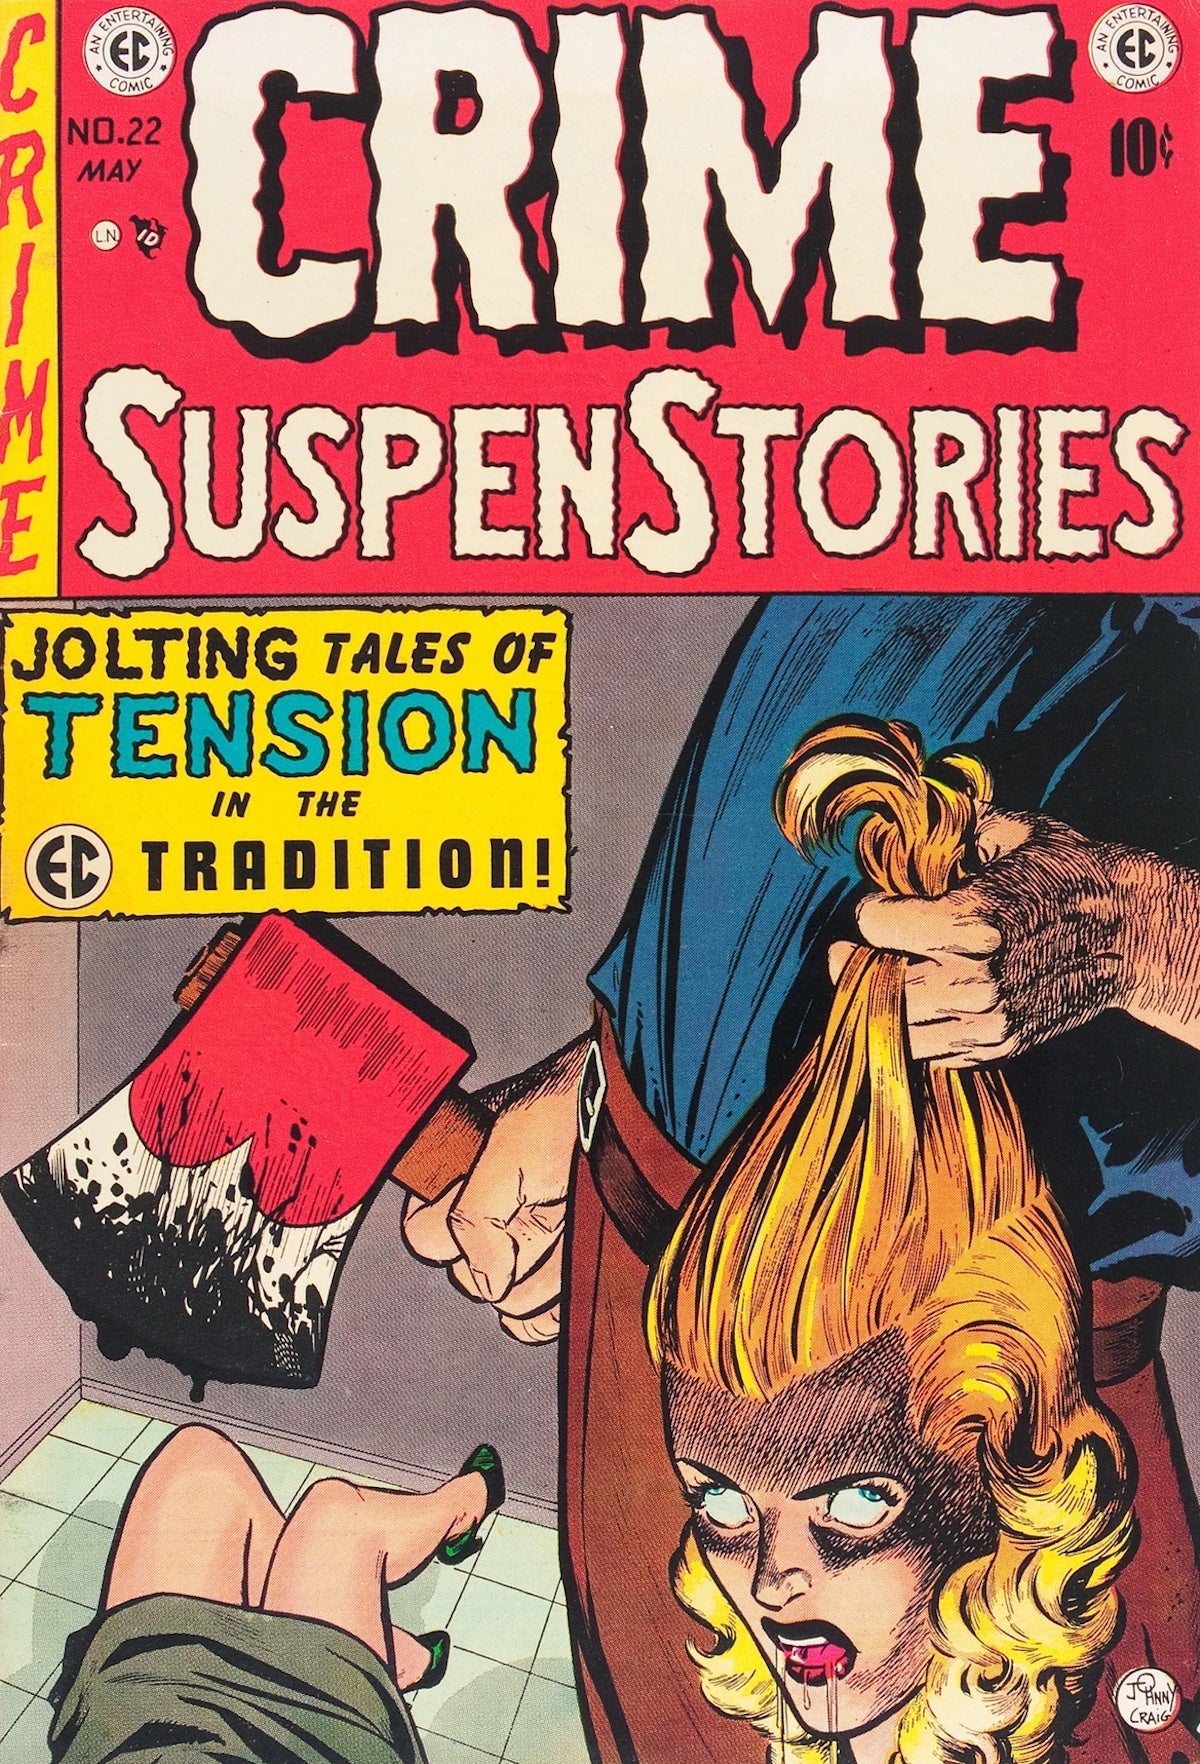 Crime SuspenStories #22